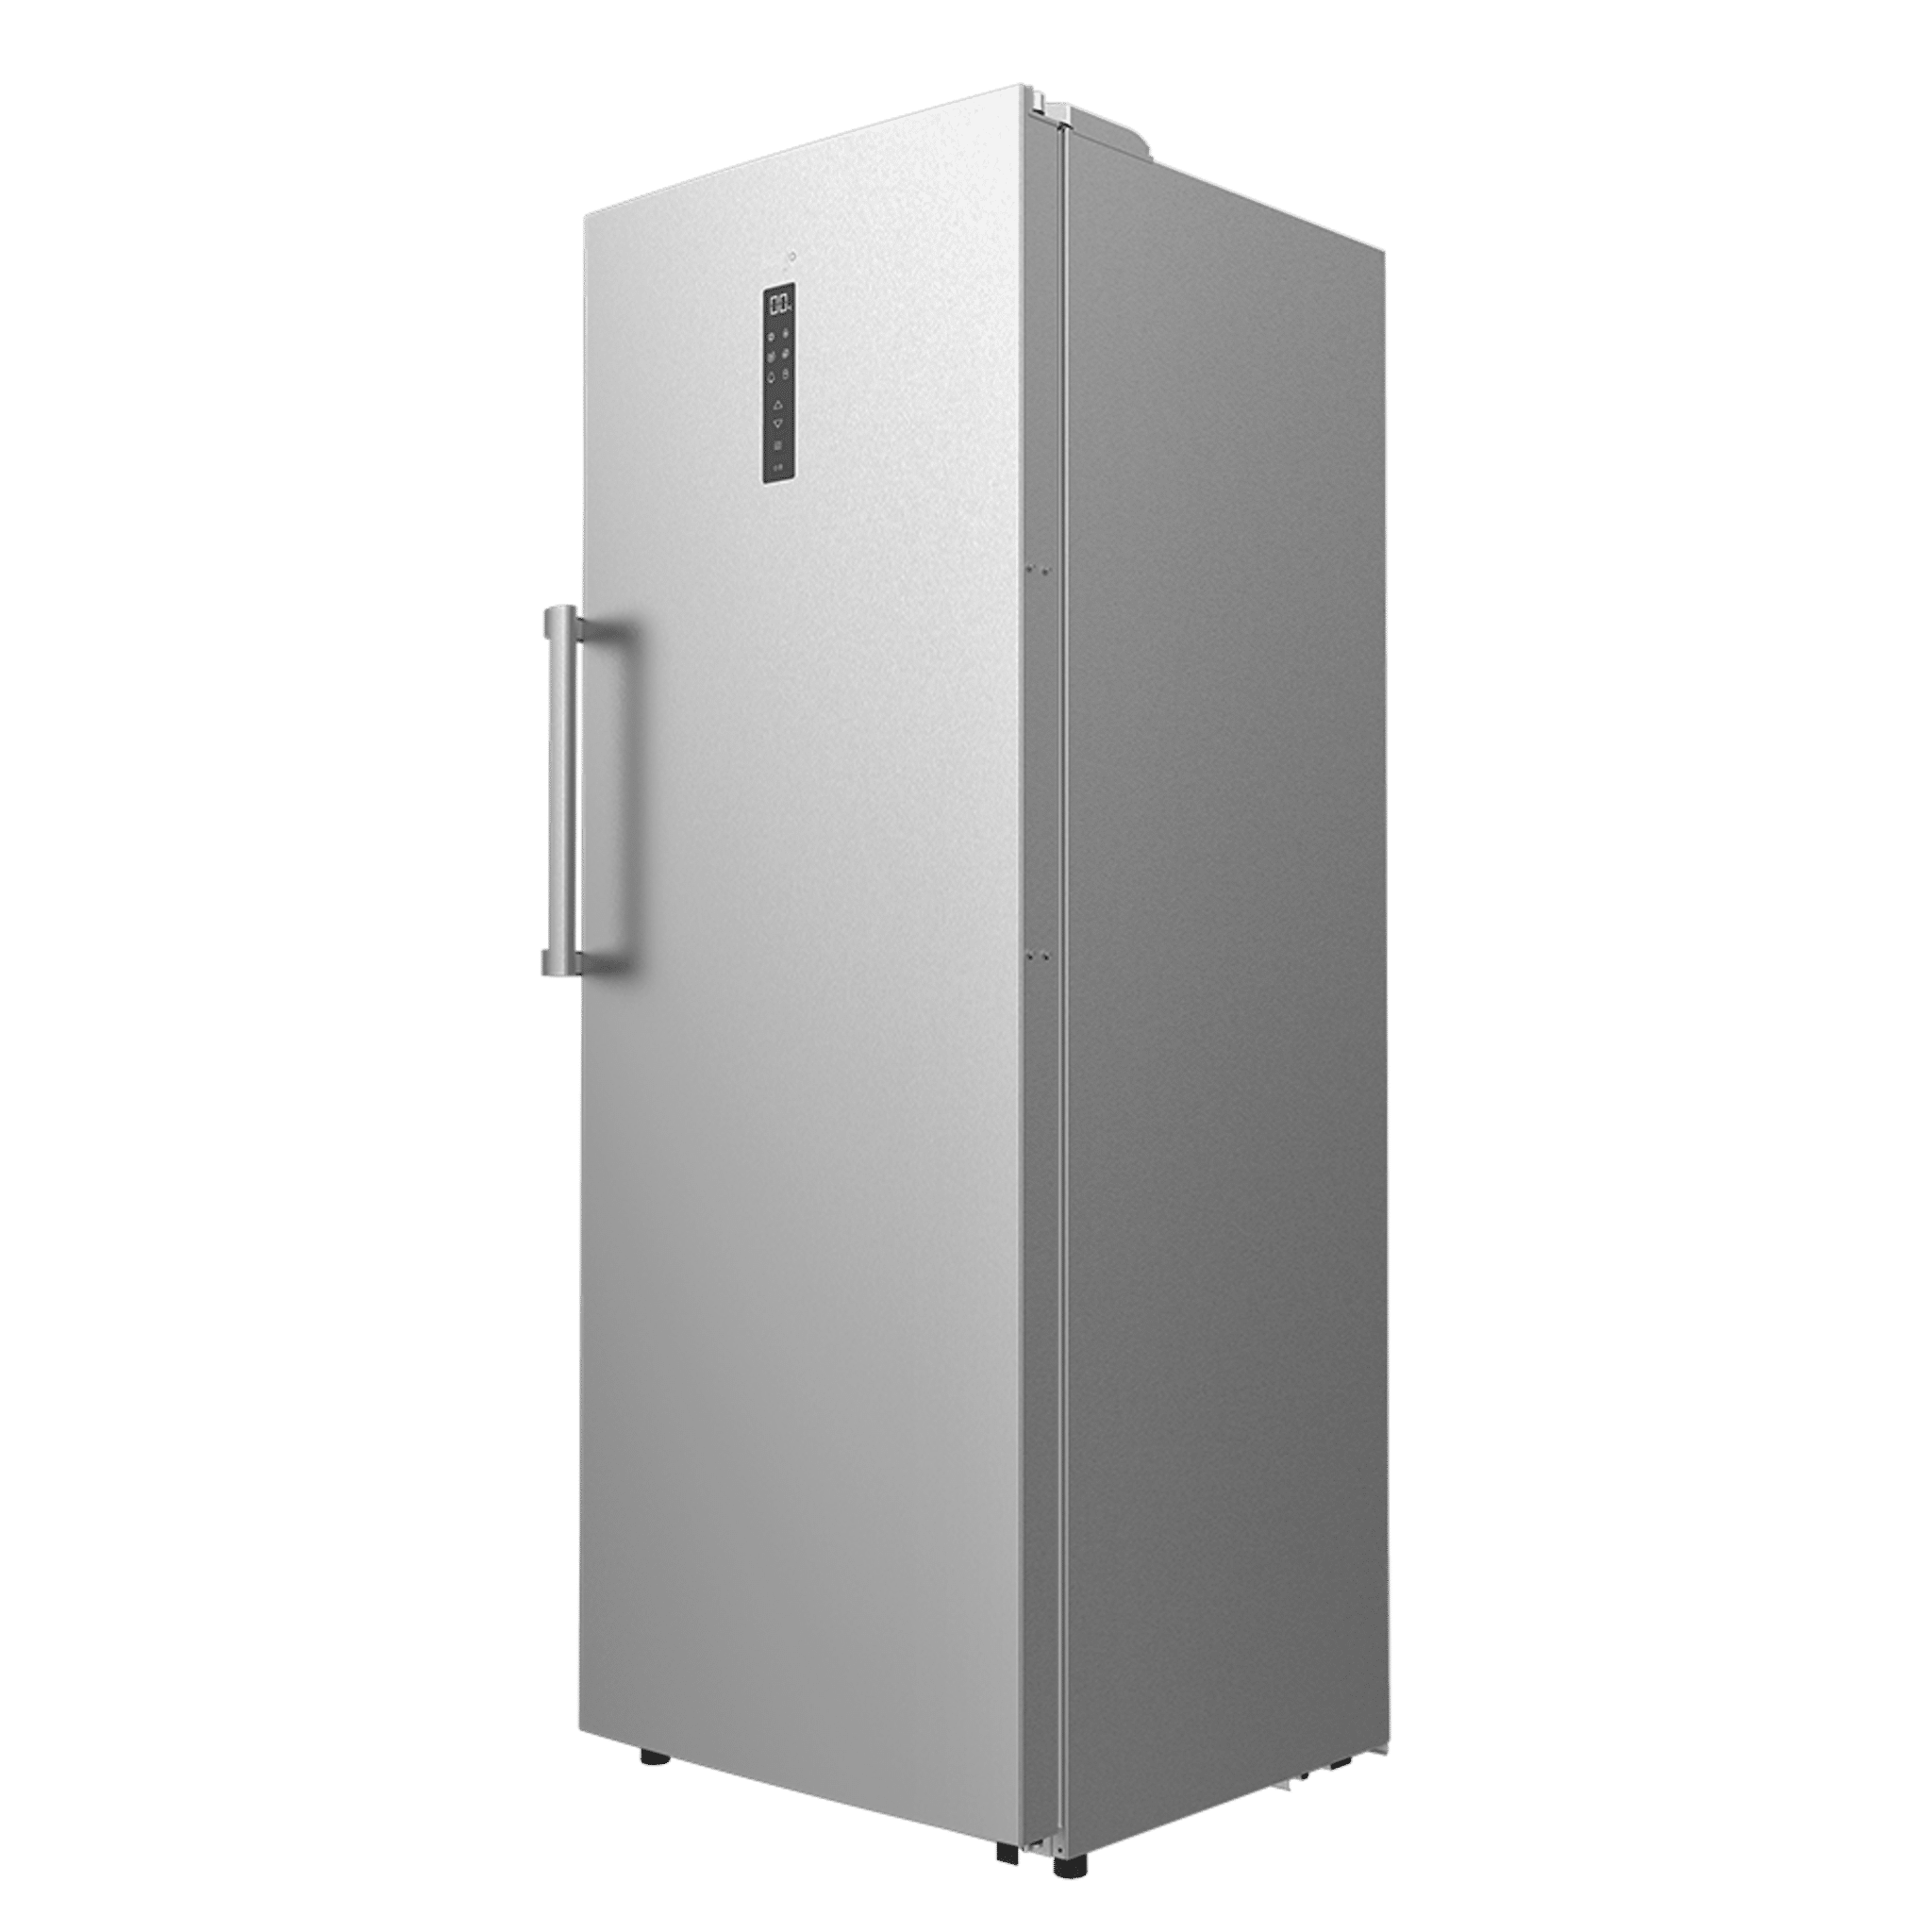 Congelador vertical 82 Litros con capacidad XL Bolero CoolMarket UF 380 inox, con flexibilidad de uso, tanto para congelador como frigorífico.